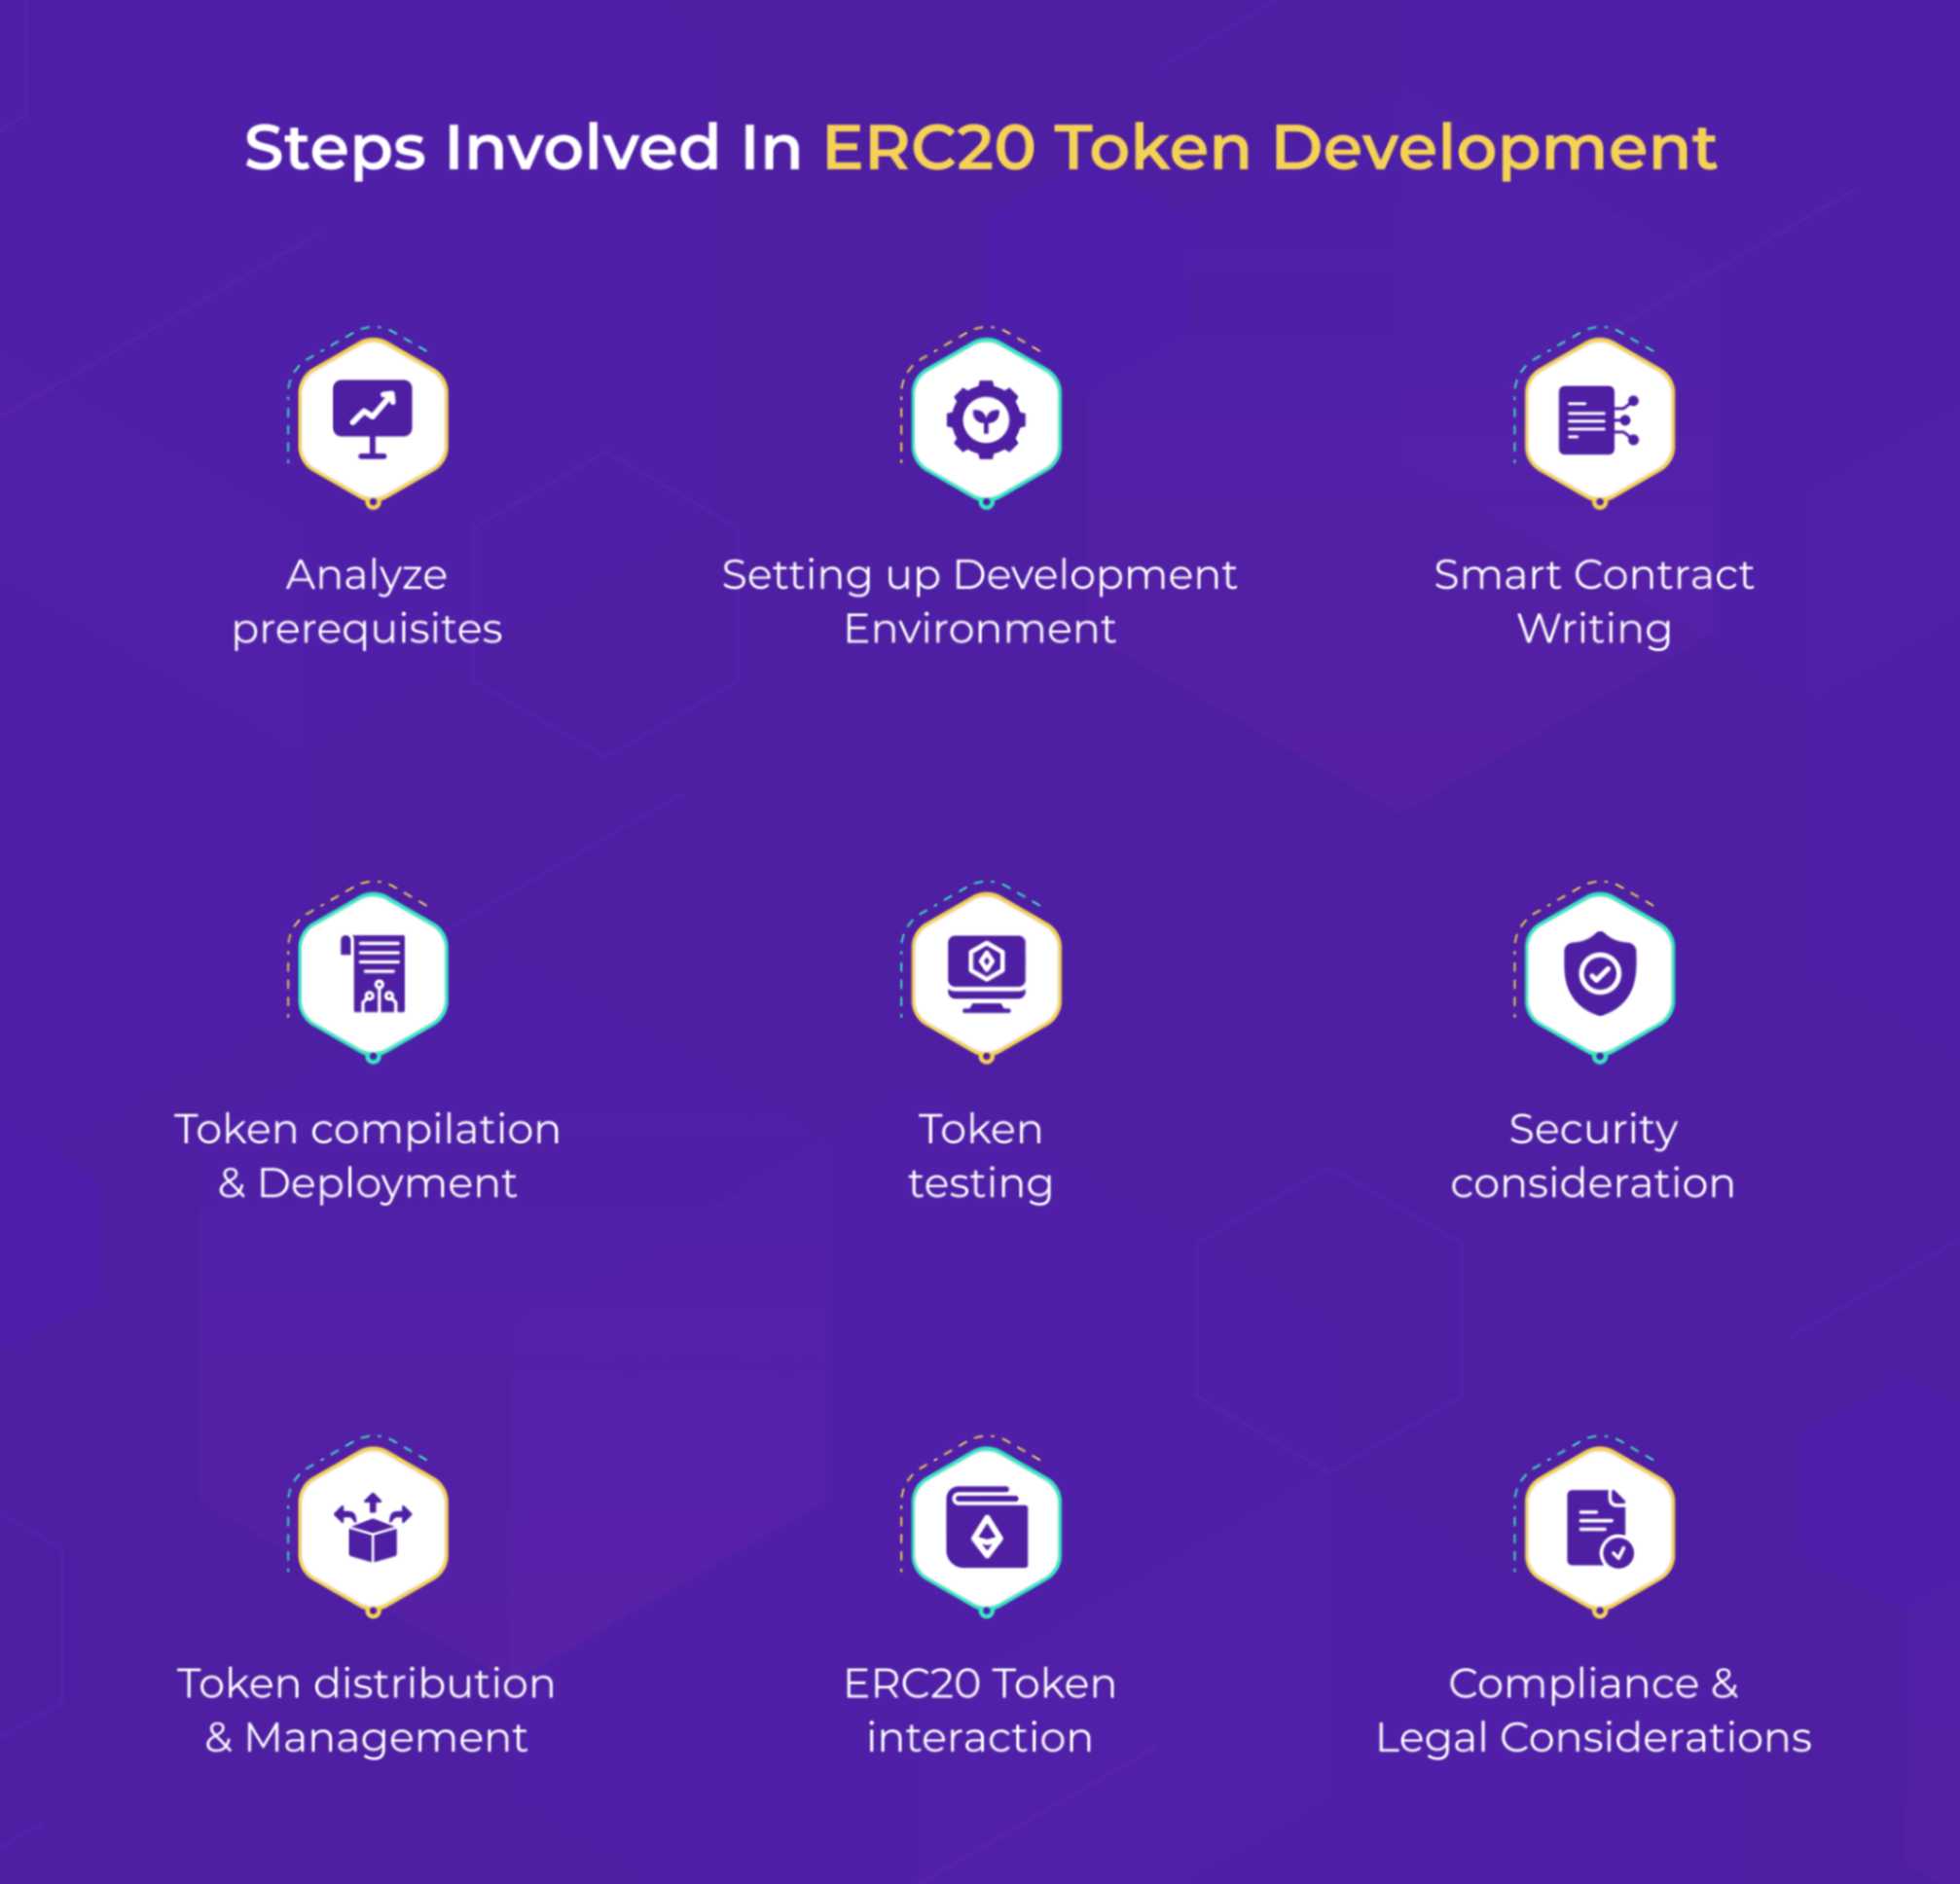 Steps Involved in ERC20 Token Development